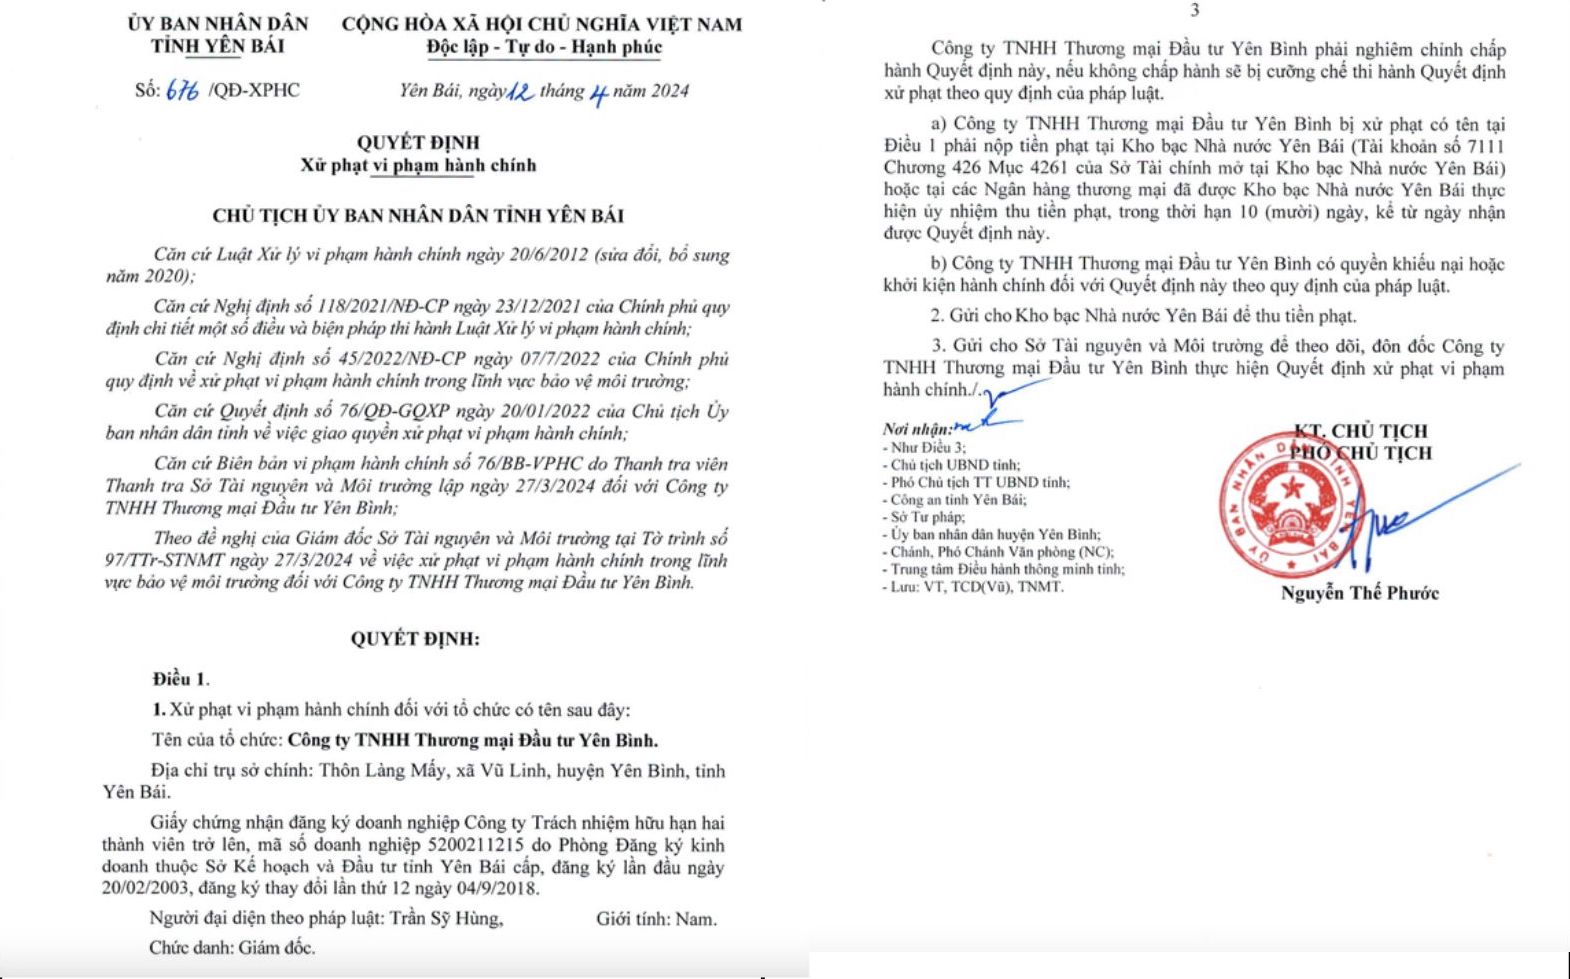 Nhà máy sắn Vũ Linh, Yên Bái xả thải vượt quy chuẩn bị xử phạt 540 triệu đồng - Ảnh 1